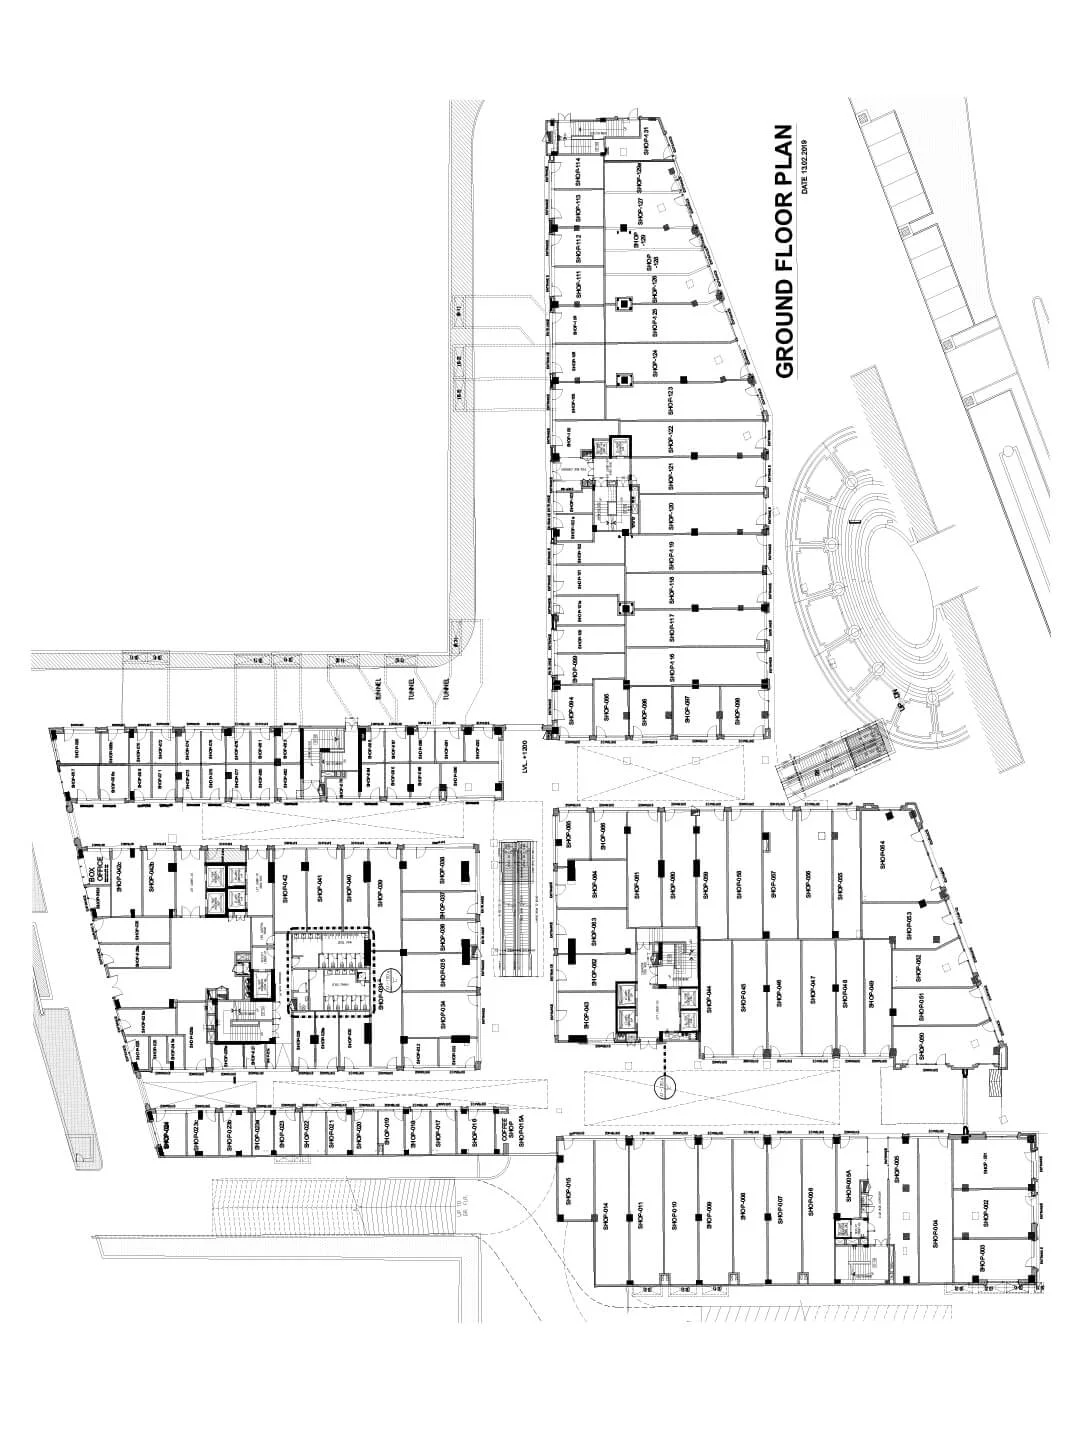 Joy Street grounf floor plan layout